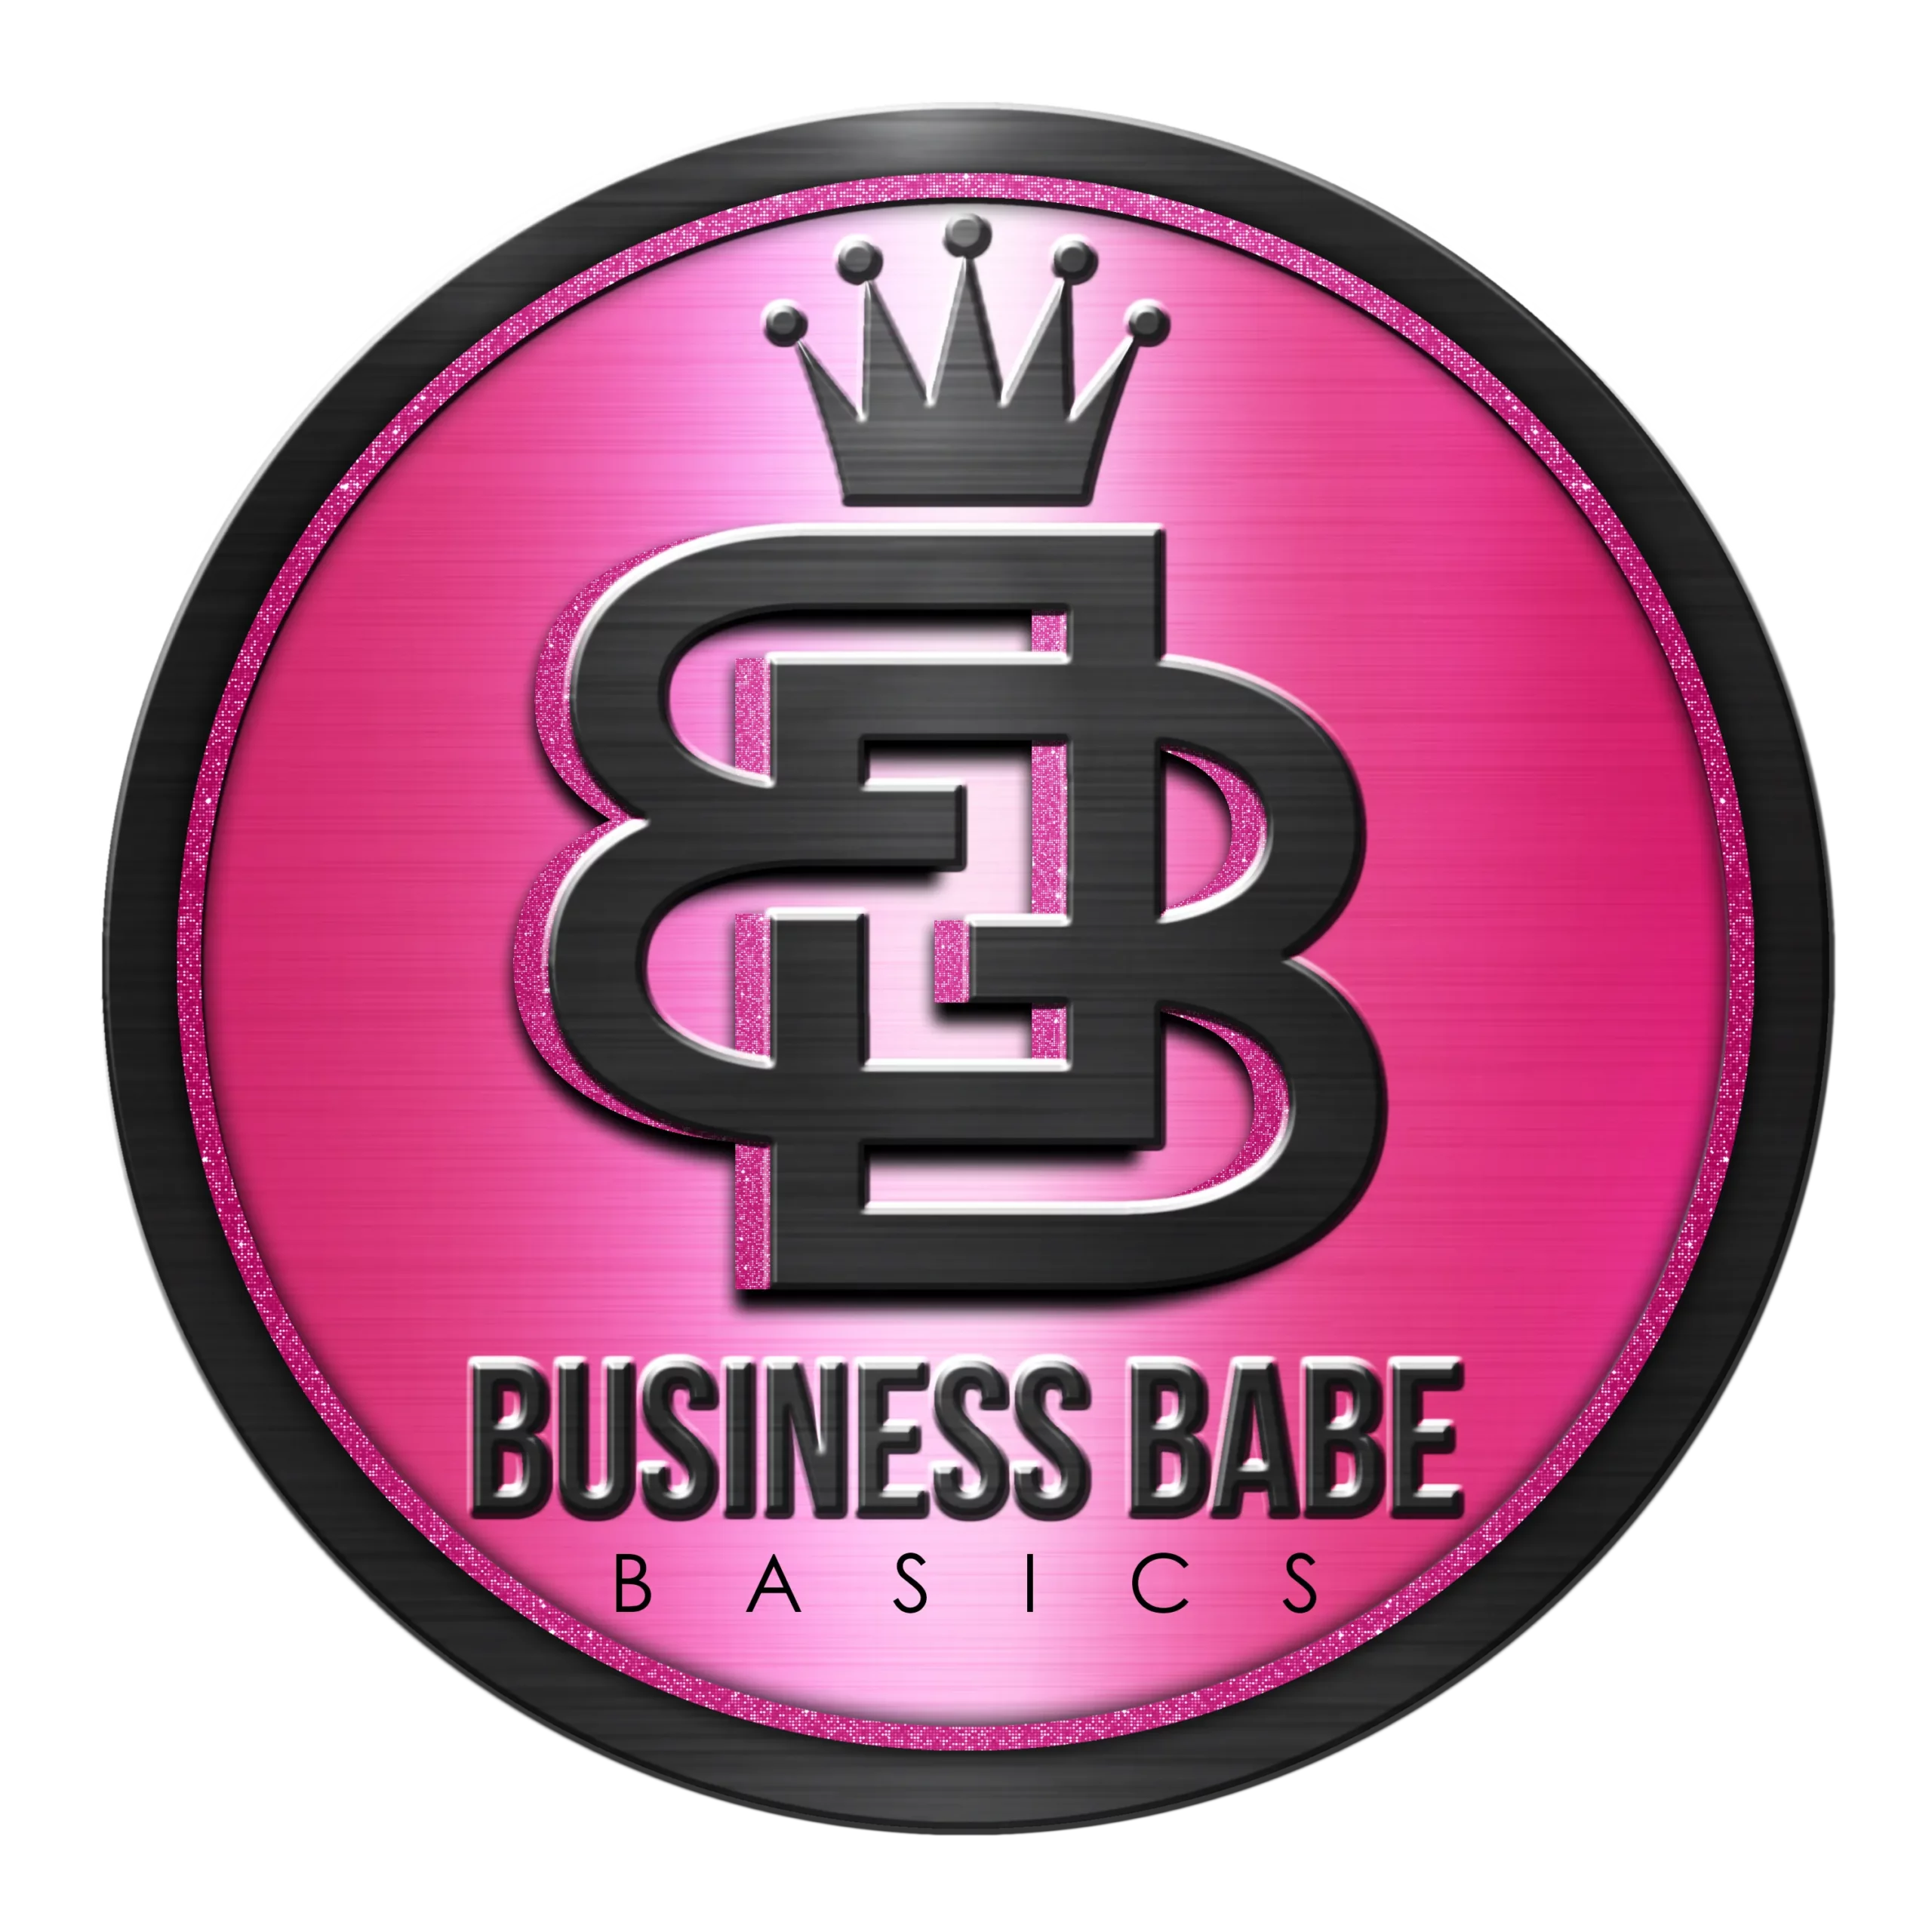 Business Babe Basics